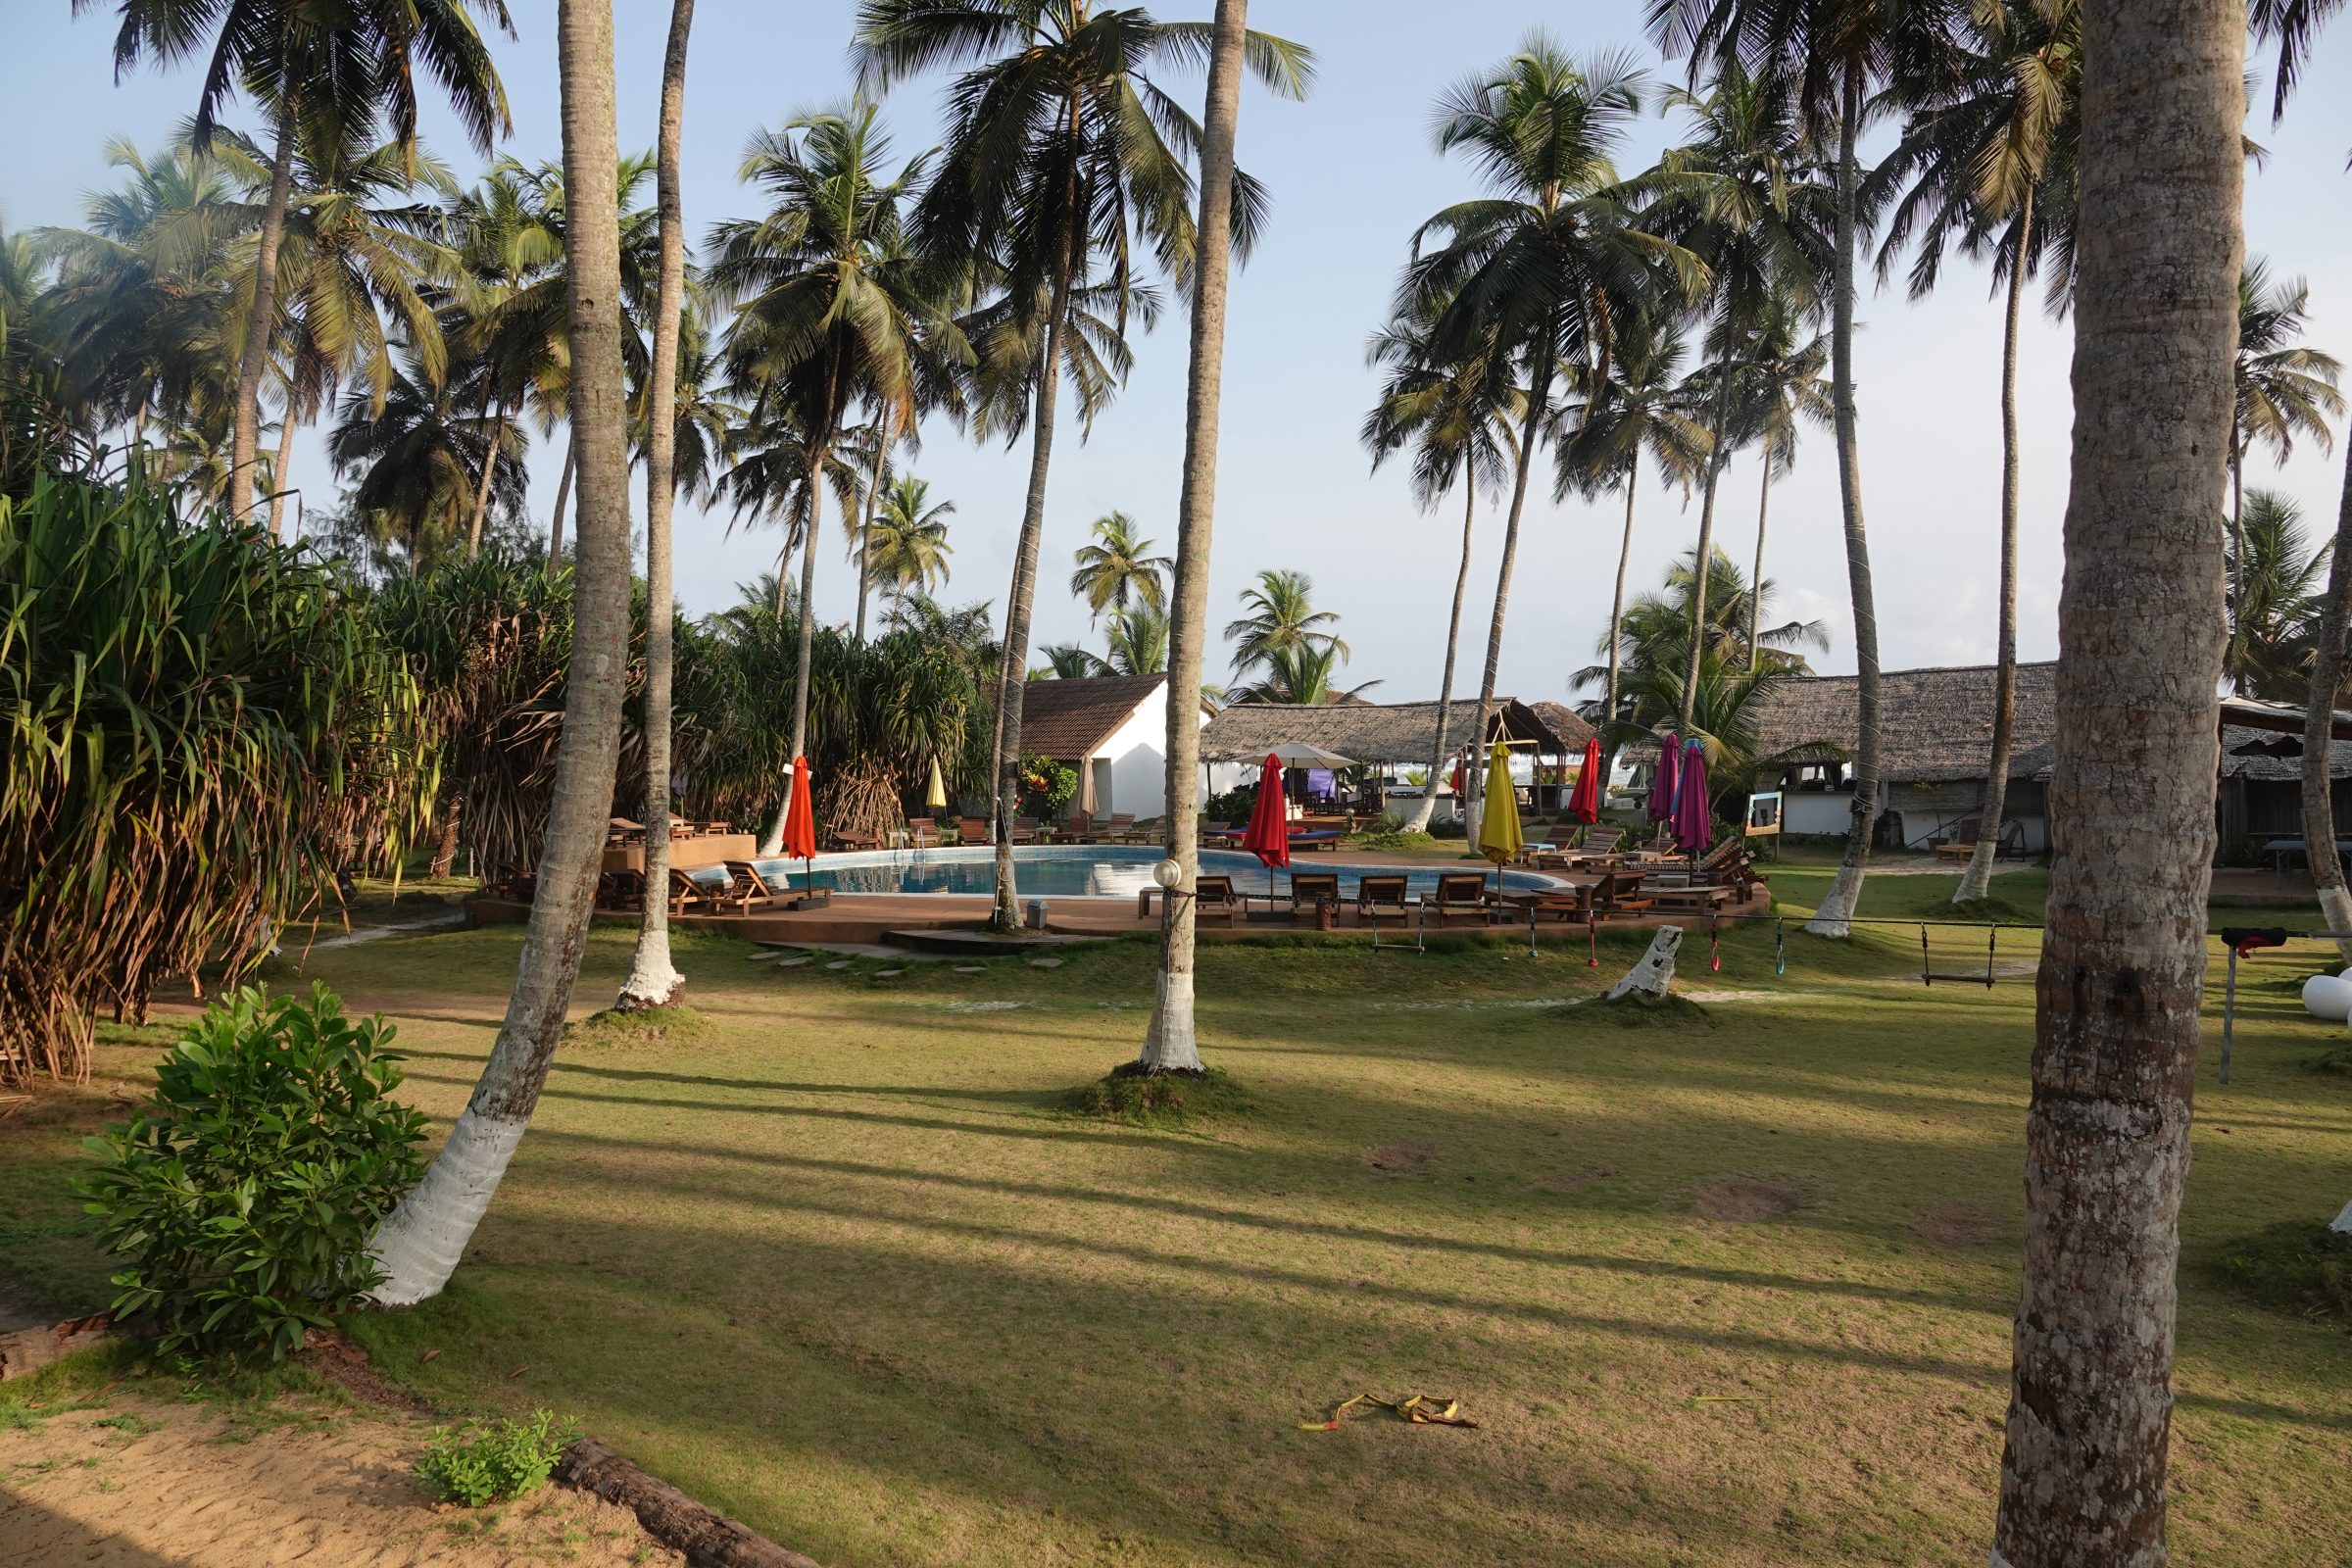 Vakantieplaatje | Resort in Ivoorkust